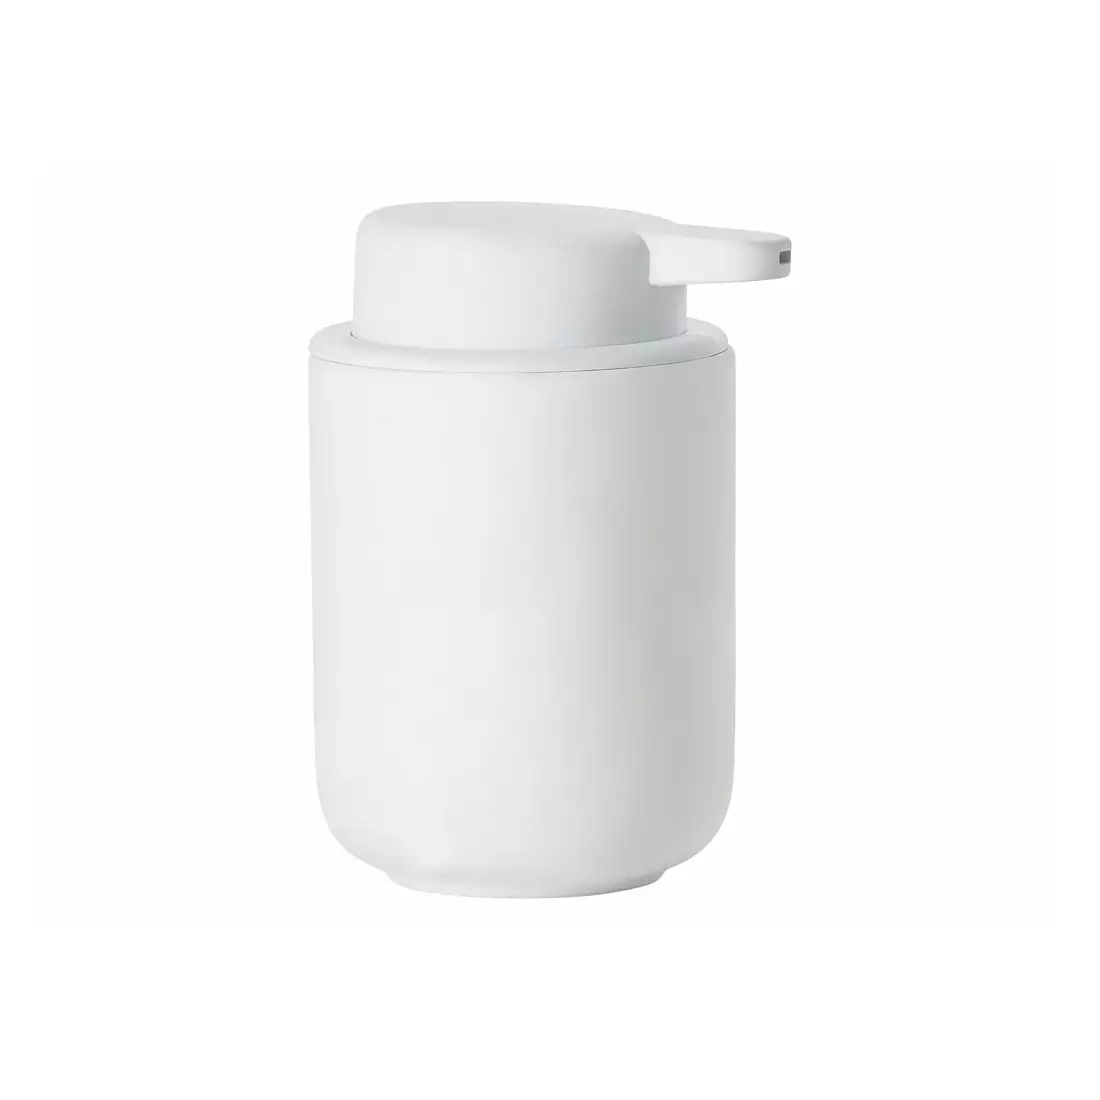 ZONE DENMARK UME soap dispenser 250 ml white